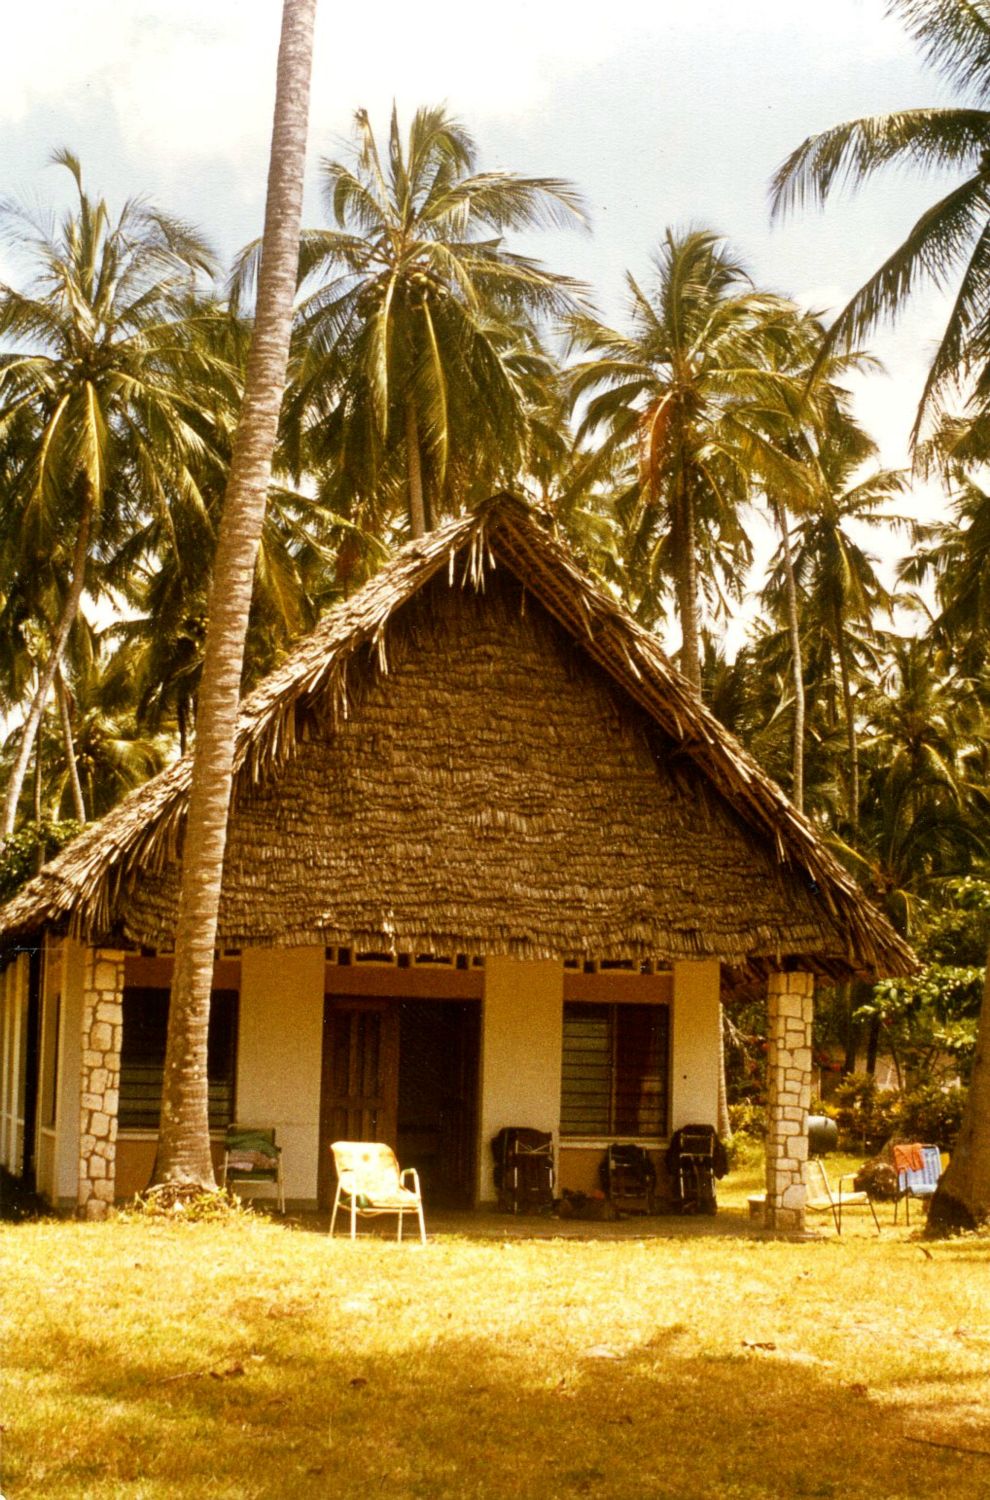 I Kanamai ved Malindi lejer vi et hus, nu skal vi ud på revet og dykke